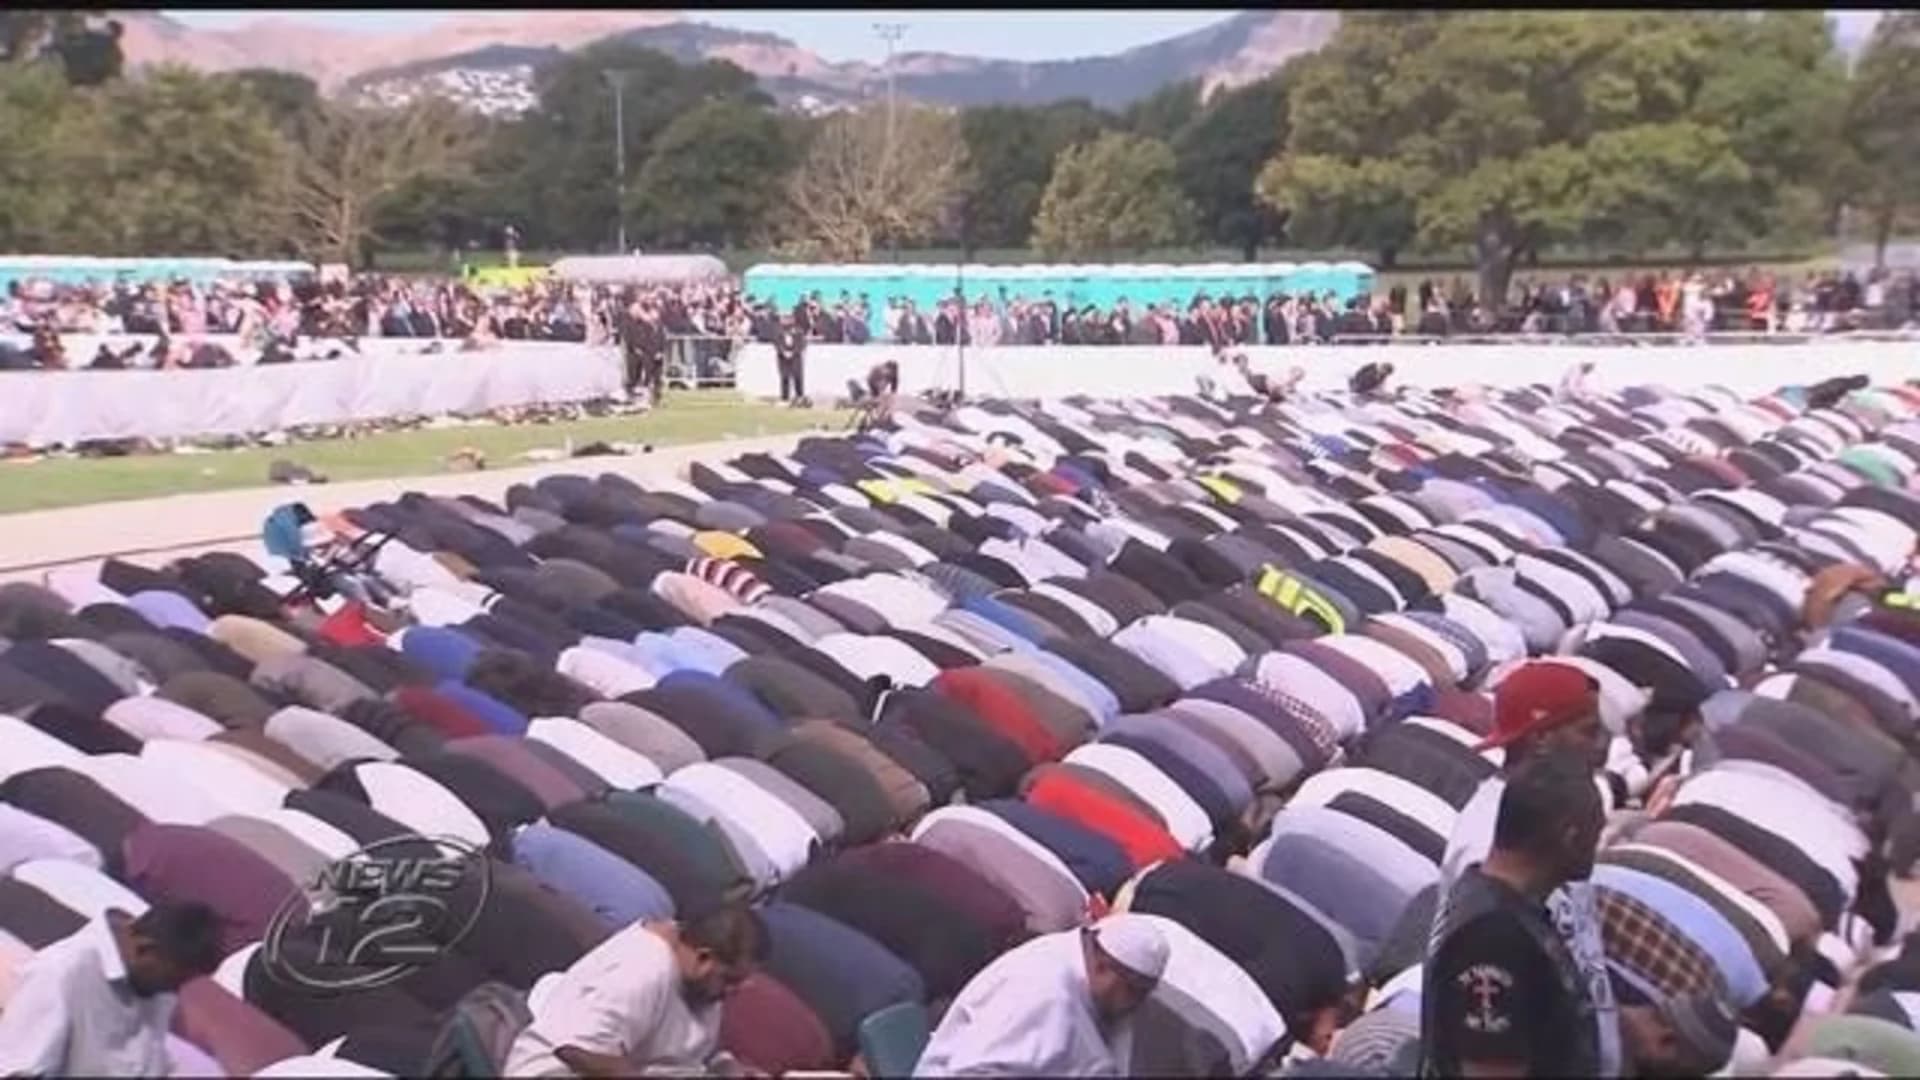 Broken-hearted but not broken: New Zealand prays together